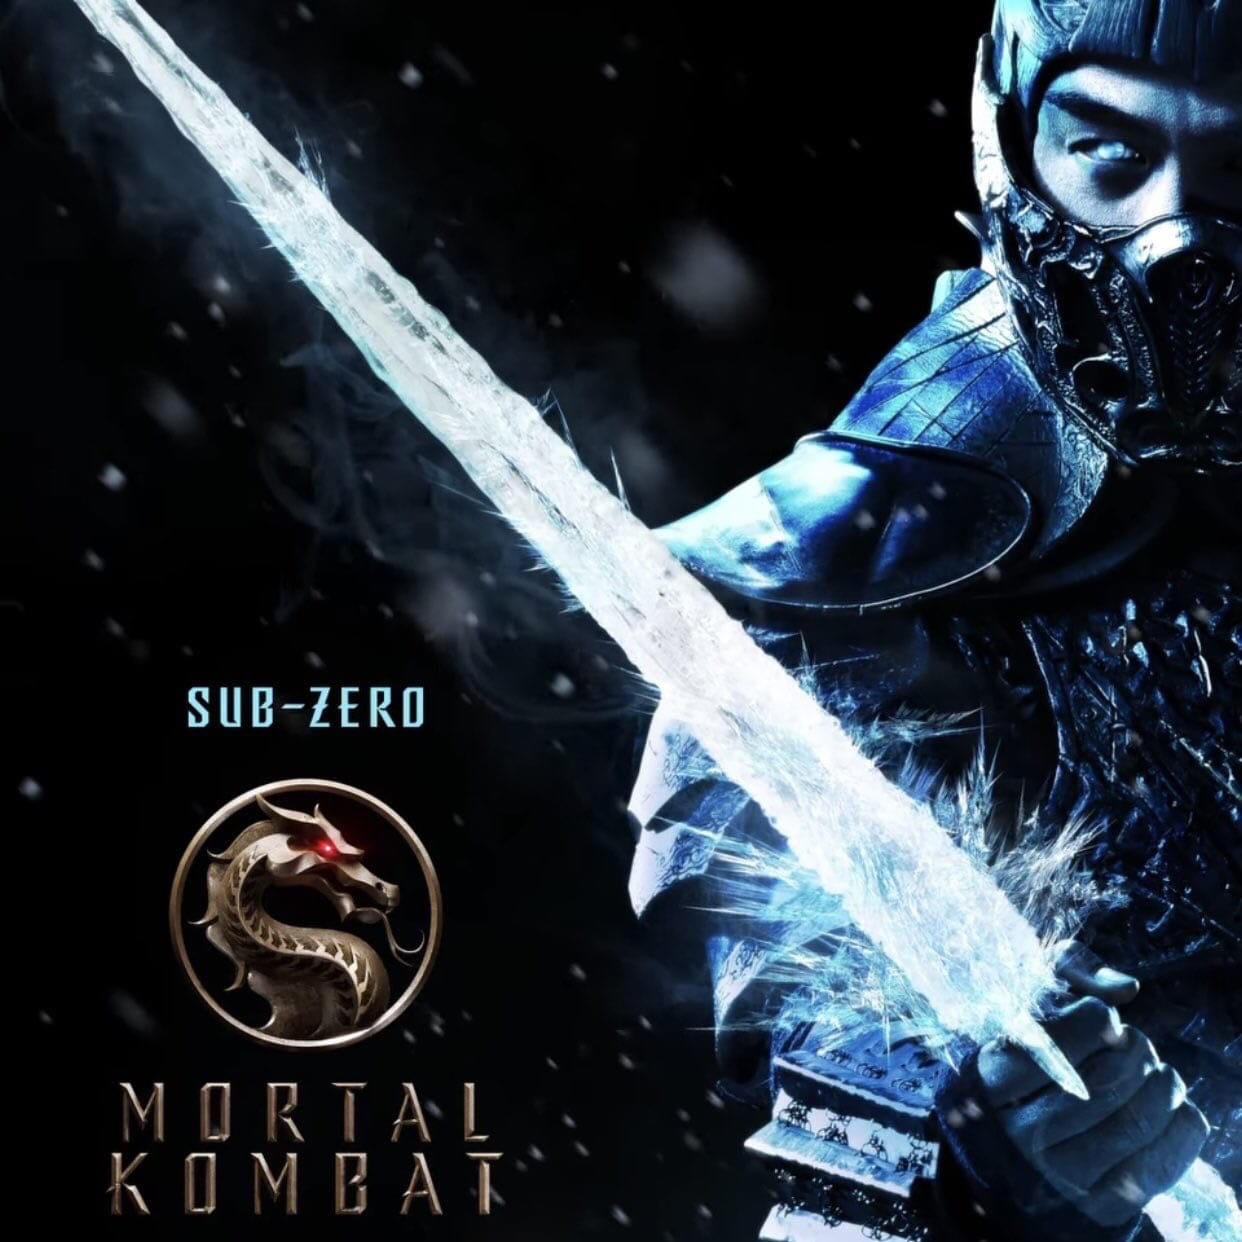 Первый трейлер фильма Mortal Kombat выйдет завтра. Новые постеры